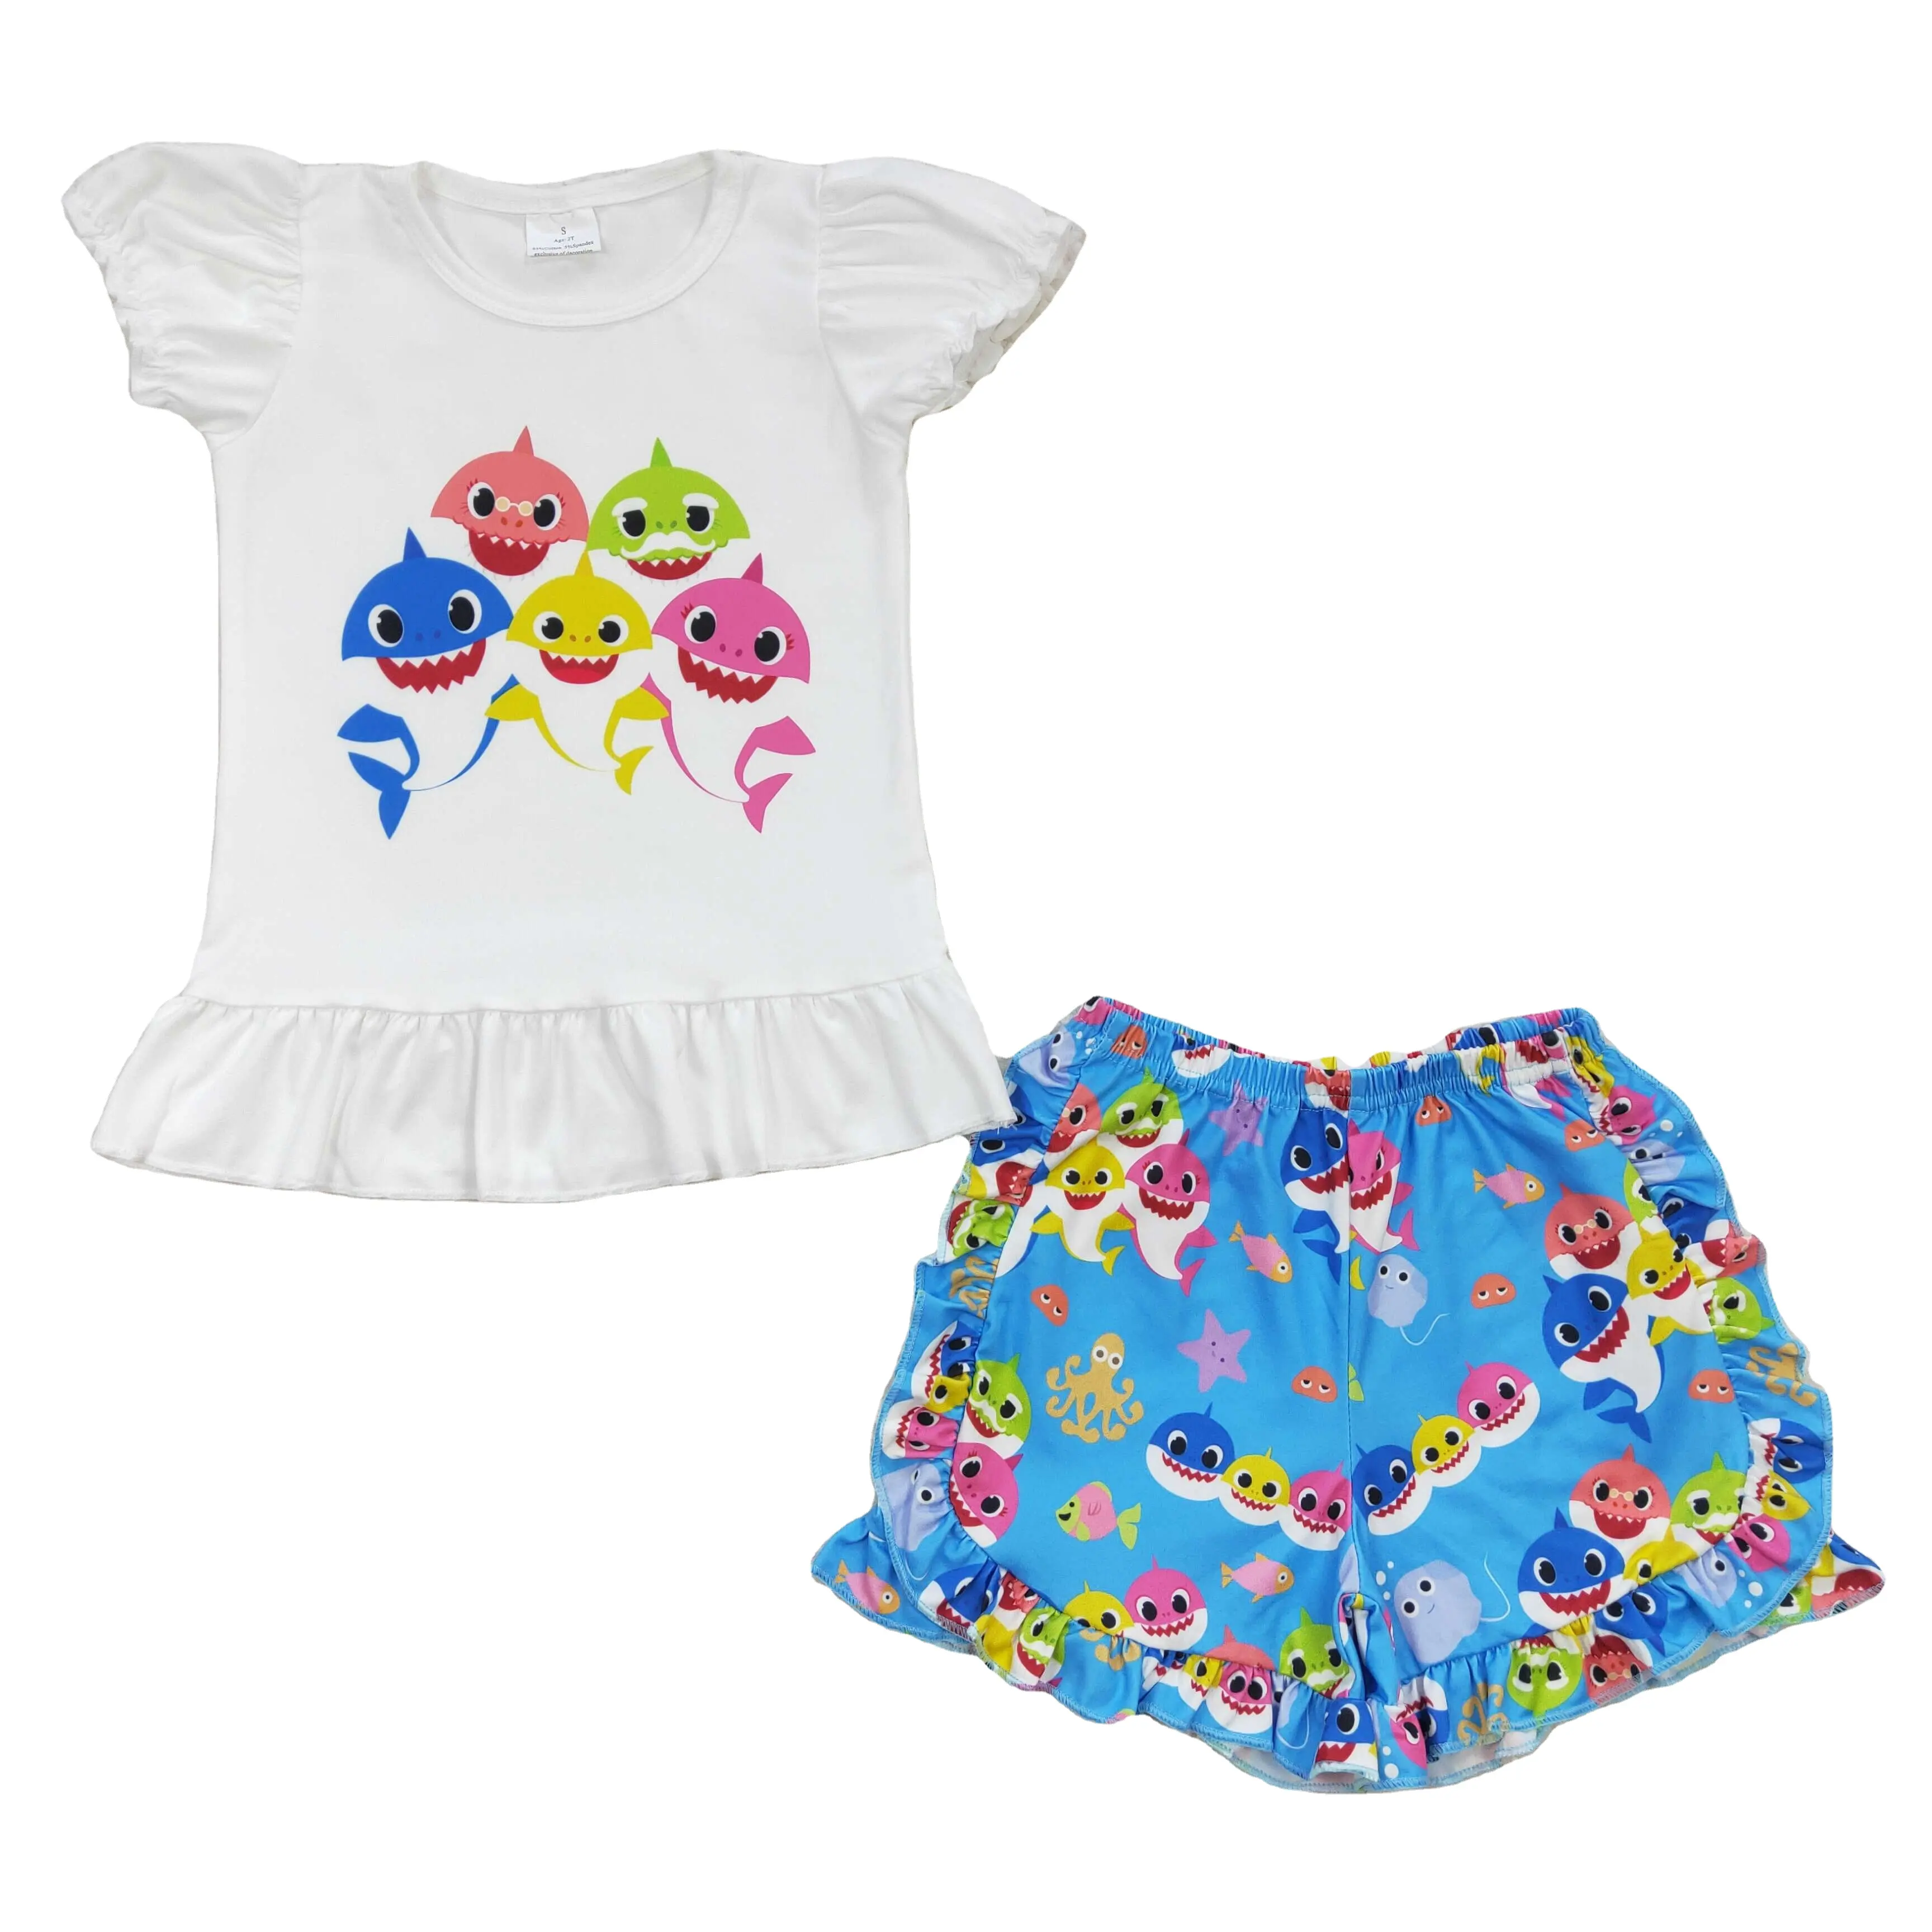 Karikatür küçük köpekbalığı mavi baskı çocuk giyim çocuk giyim bebek kız butik setleri iki adet T shirt şort kıyafetler